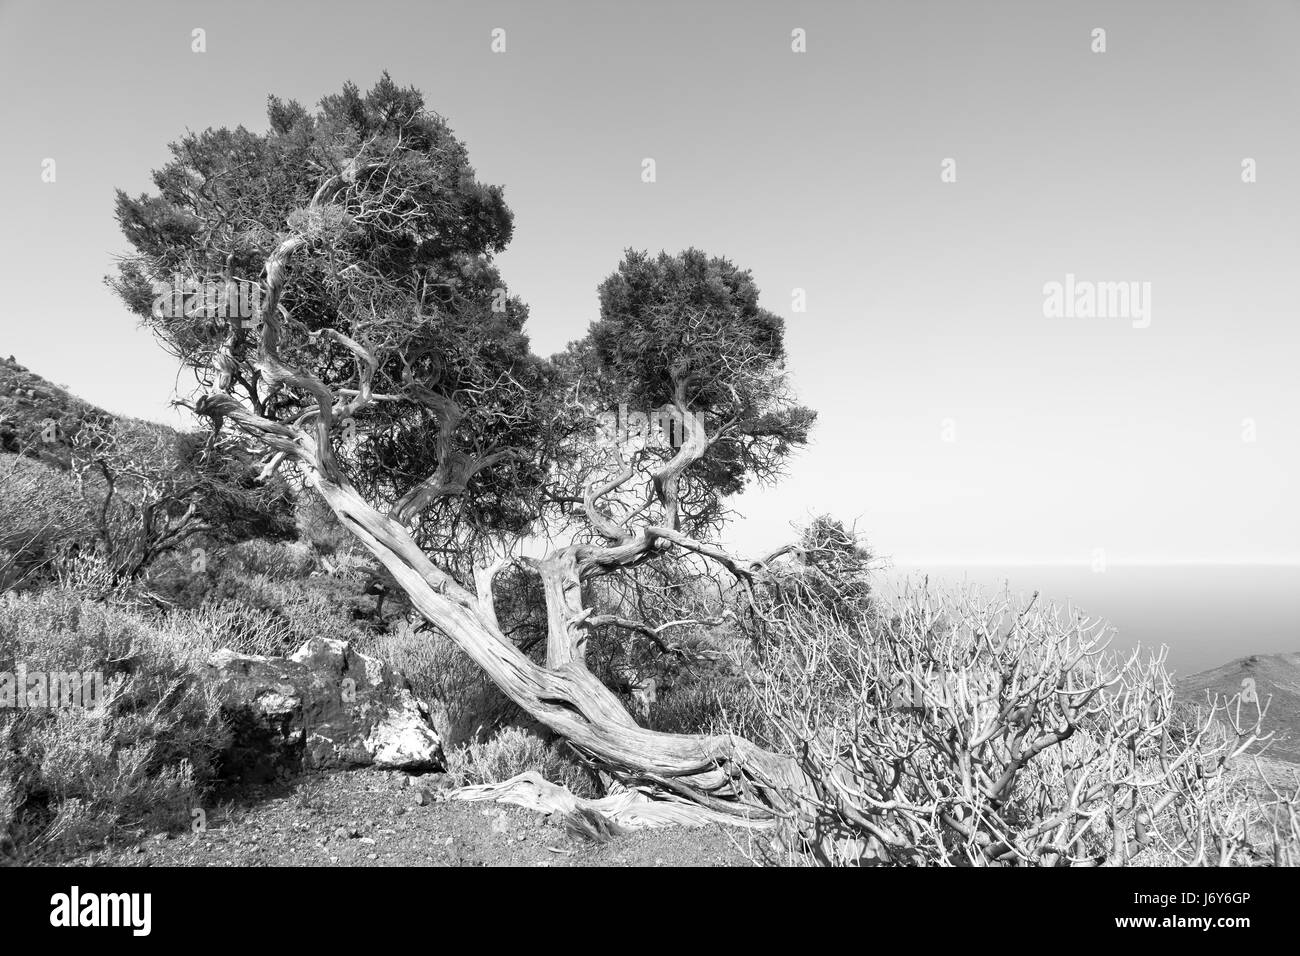 Piegati dal vento forte albero in altopiani di El Hierro, Isole Canarie. Immagine in bianco e nero Foto Stock